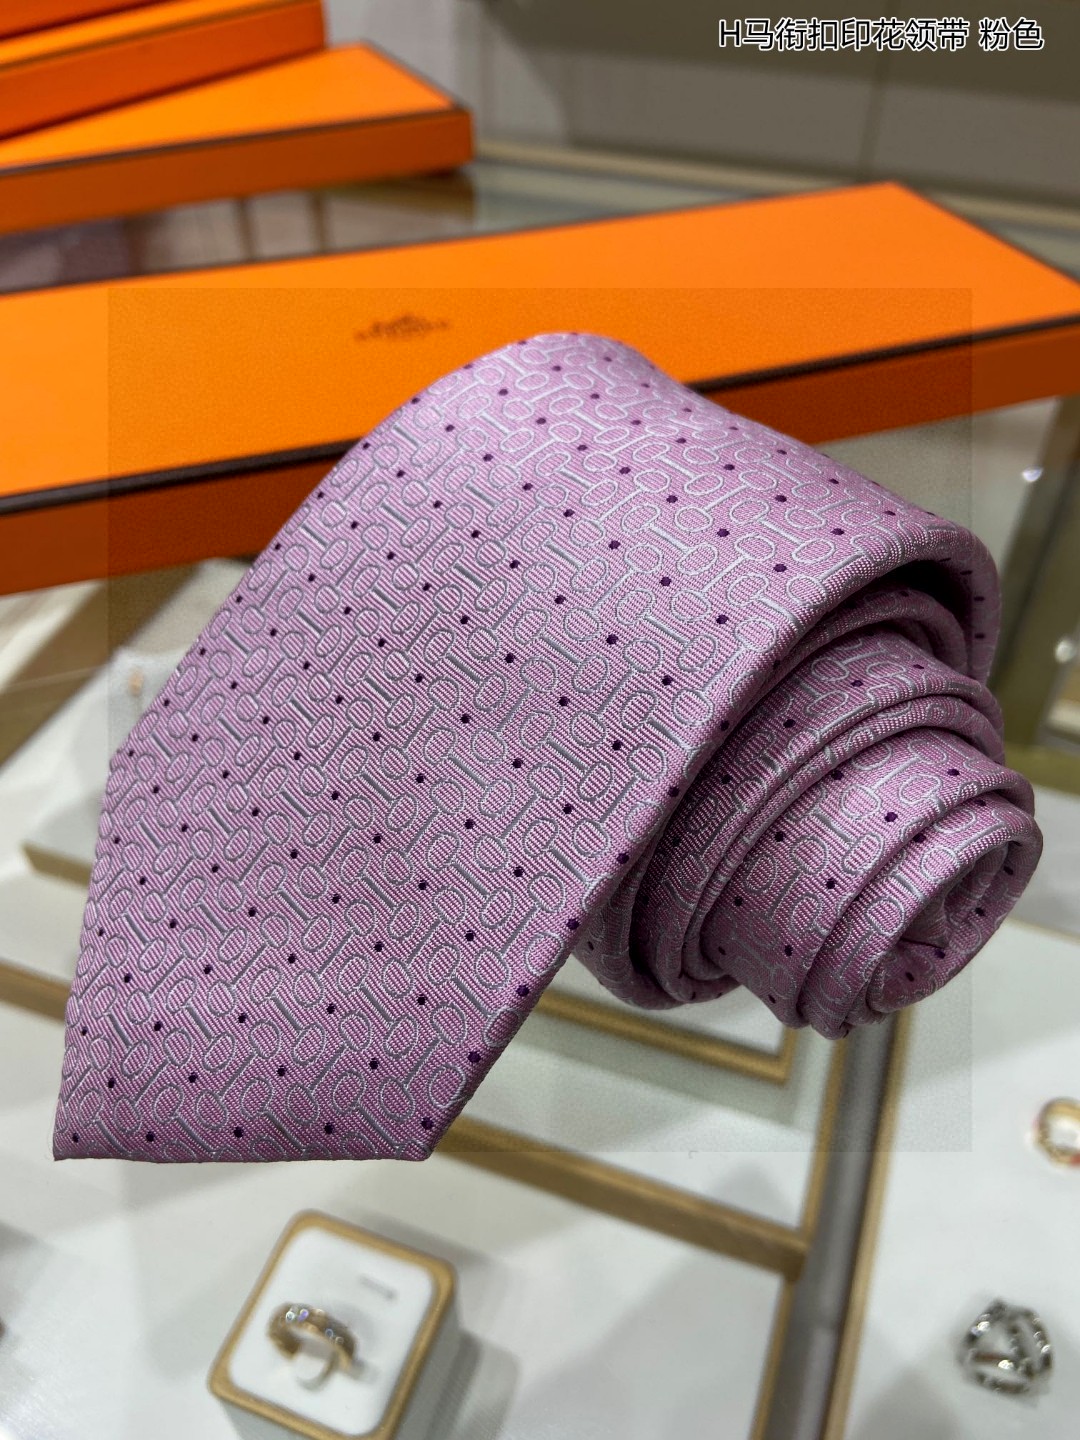 特价男士新款领带系列H马衔扣印花领带稀有H家每年都有一千条不同印花的领带面世从最初的多以几何图案表现骑术